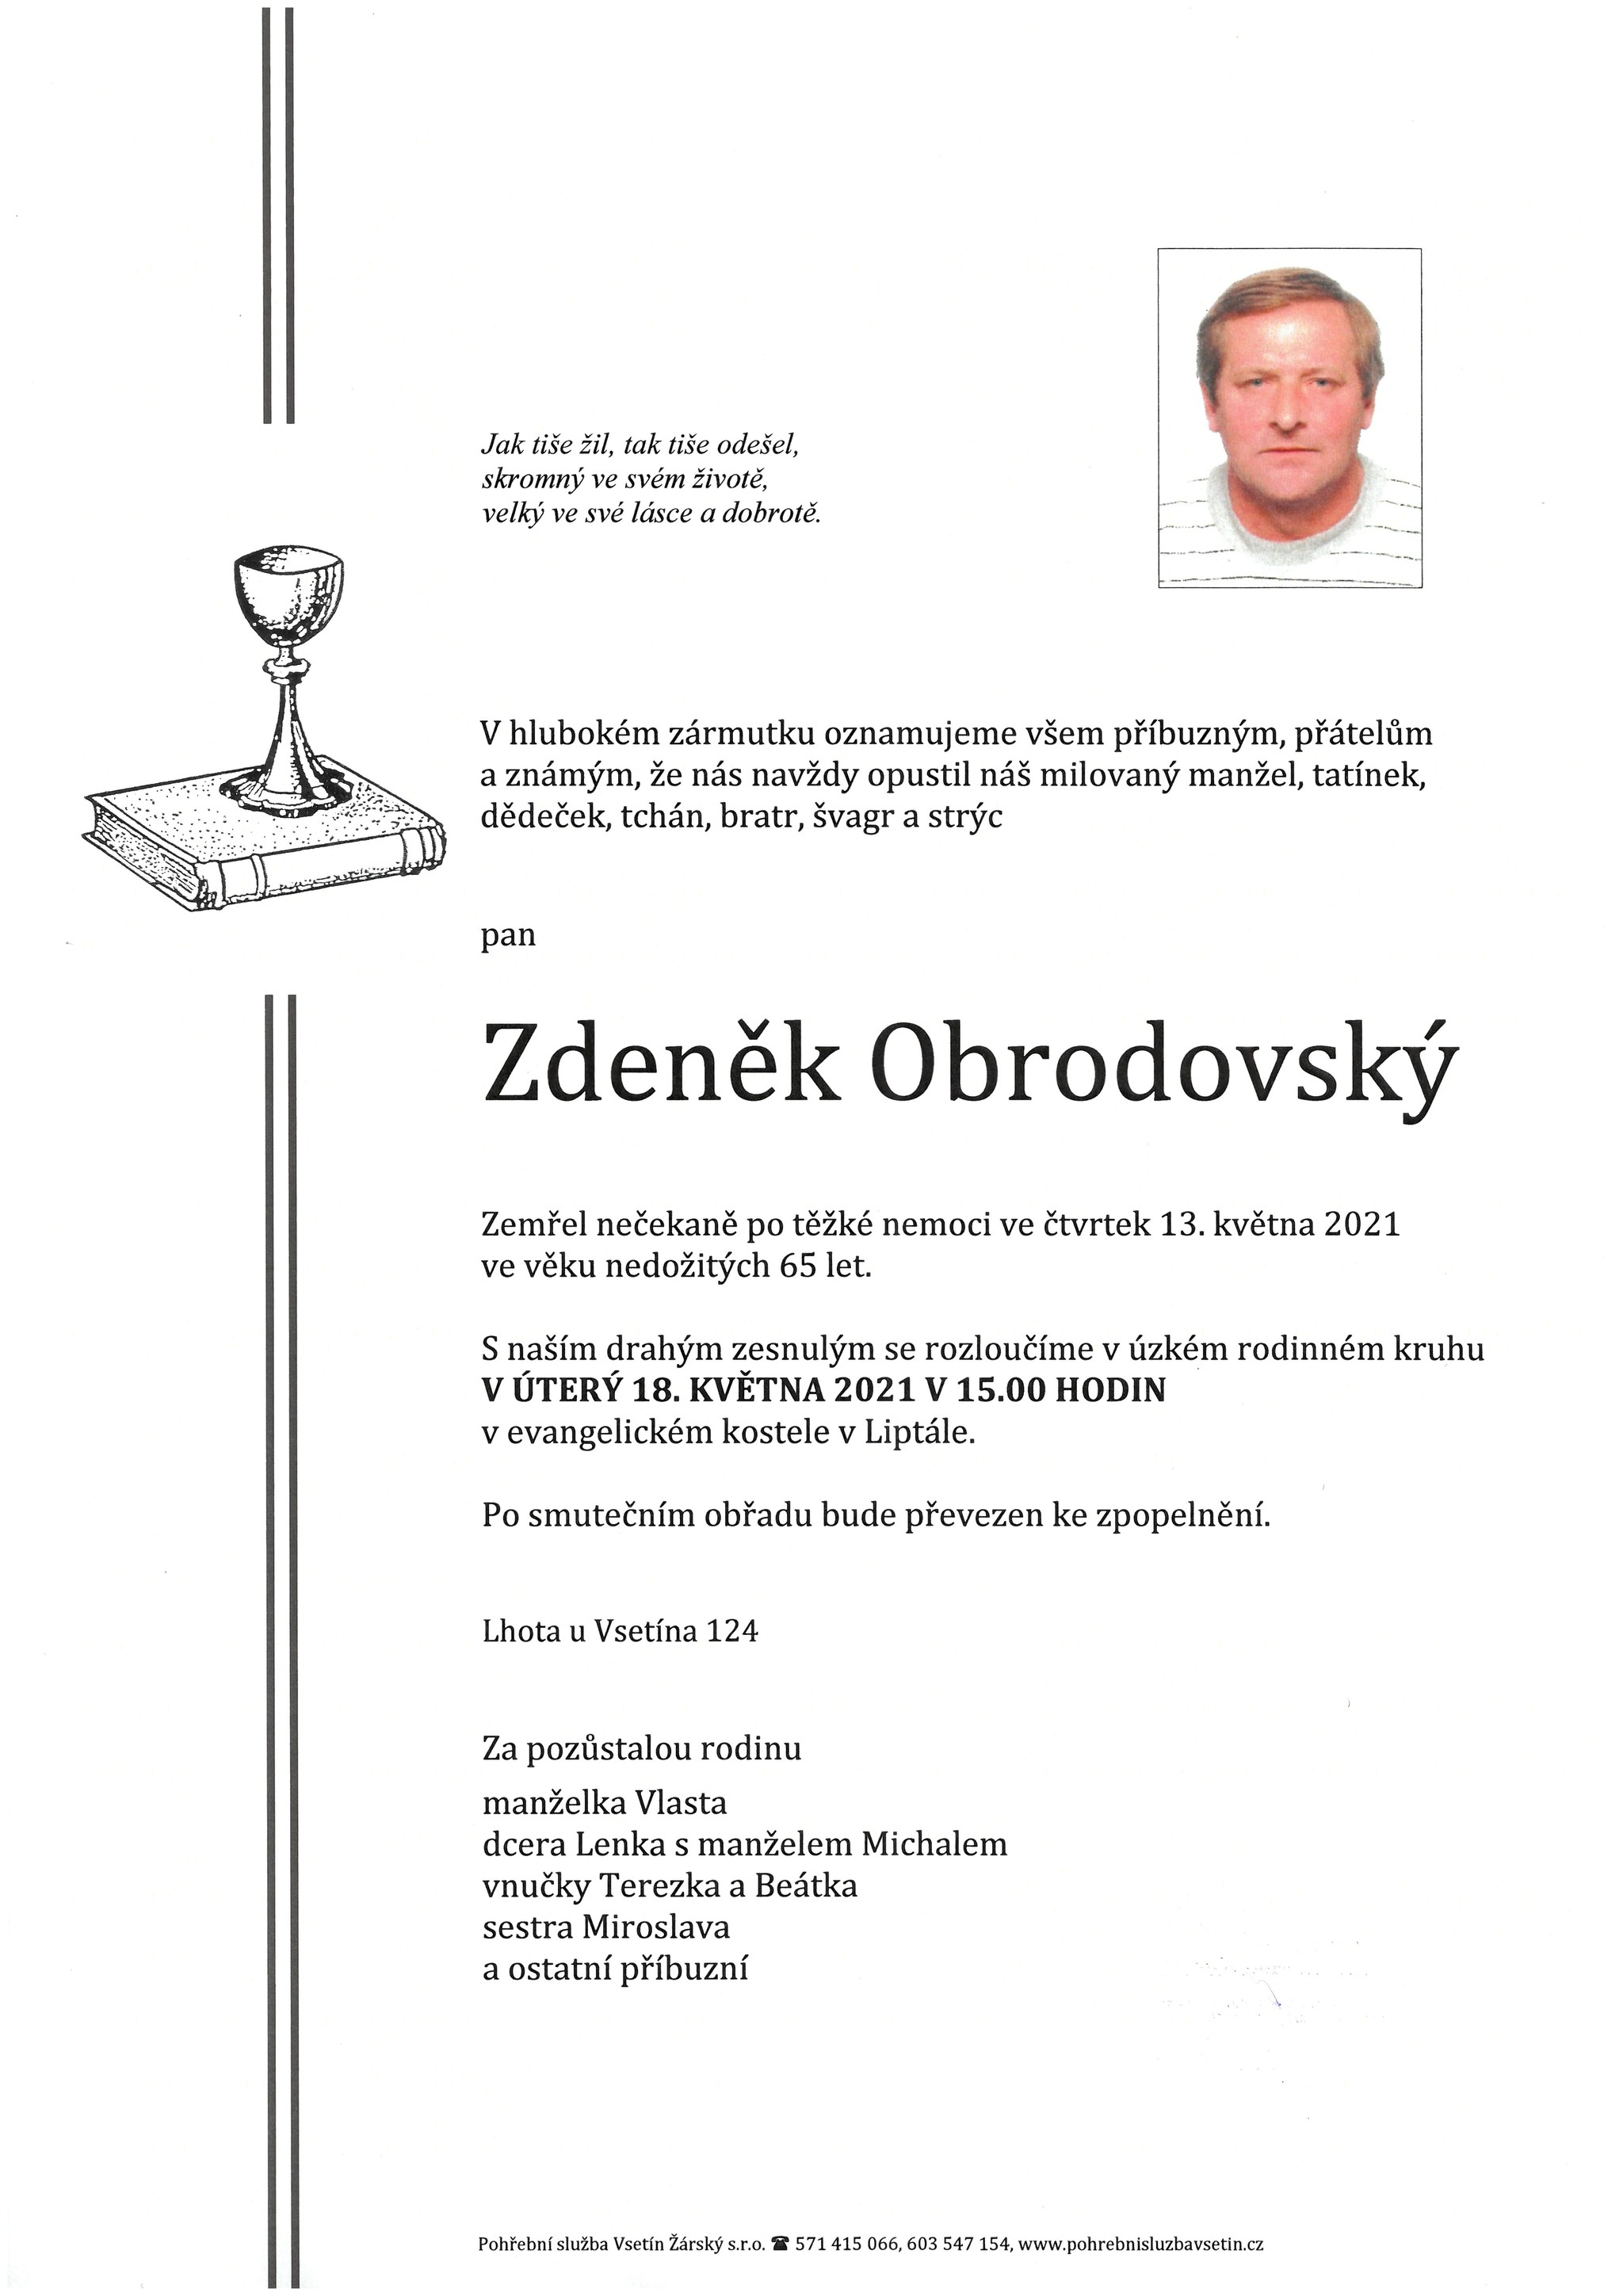 Zdeněk Obrodovský